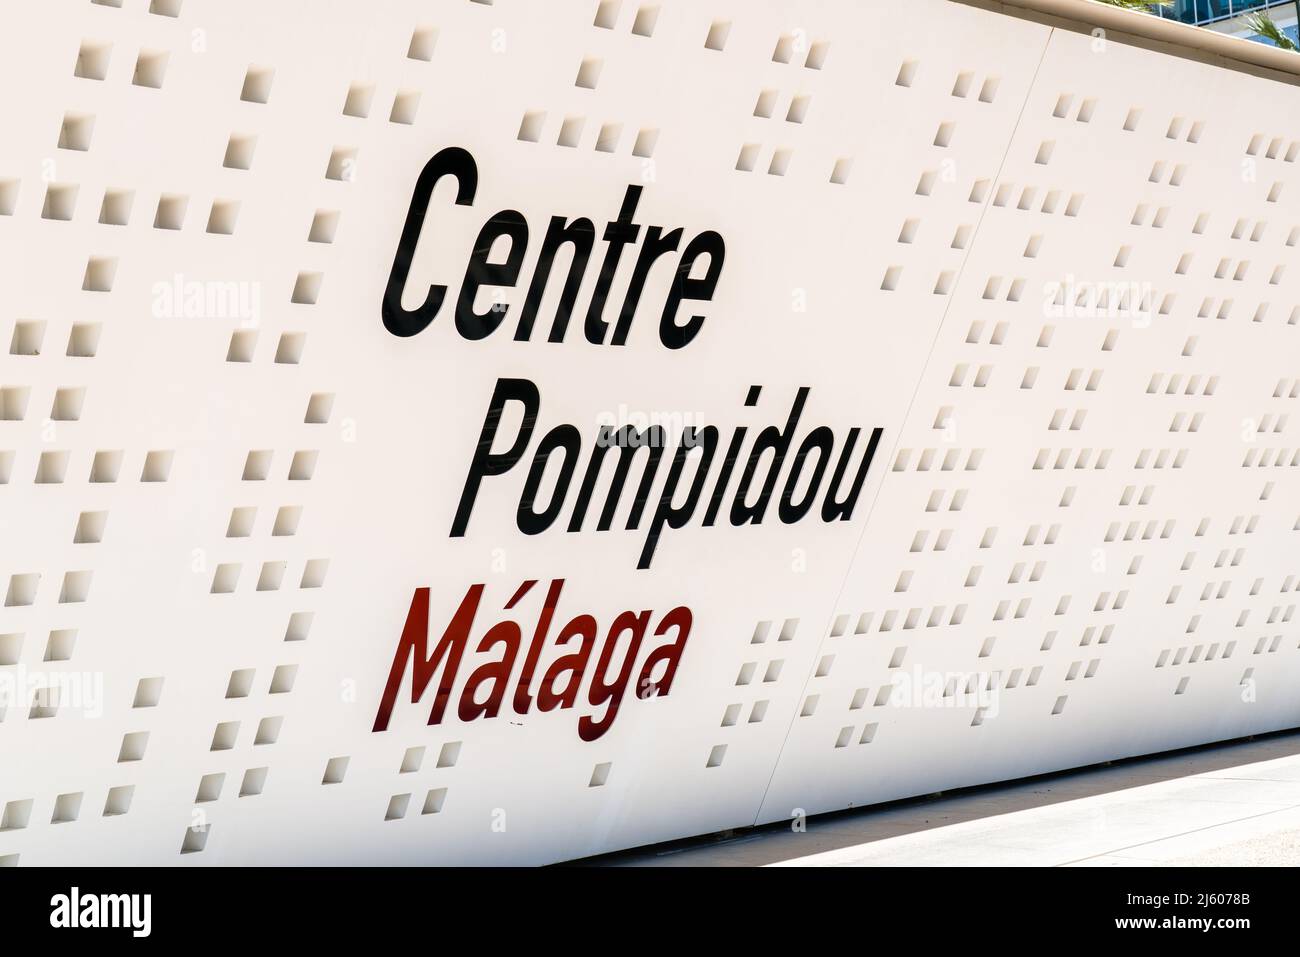 Bâtiment du Centre Pompidou connu sous le nom de Cube, situé entre les quais 1 et 2 du port de Malaga. Banque D'Images